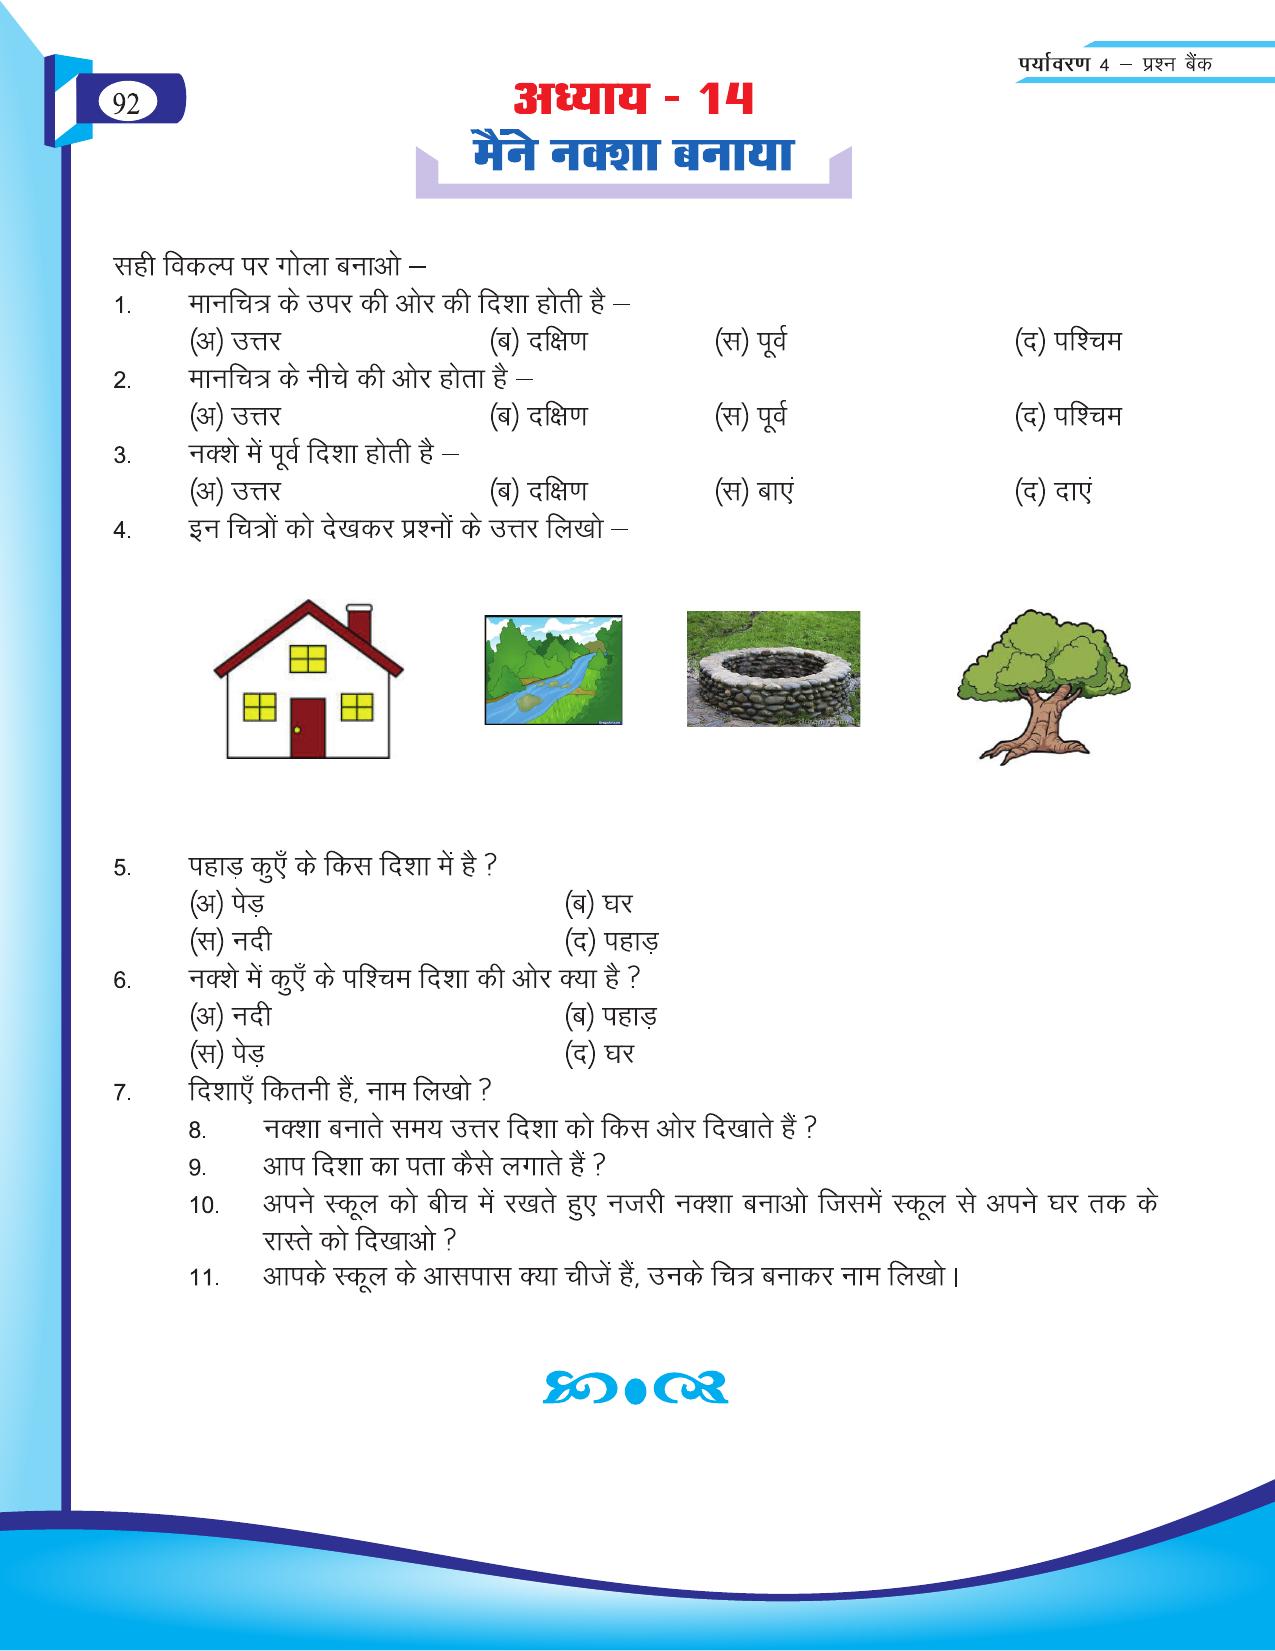 Chhattisgarh Board Class 4 EVS Question Bank 2015-16 - Page 21